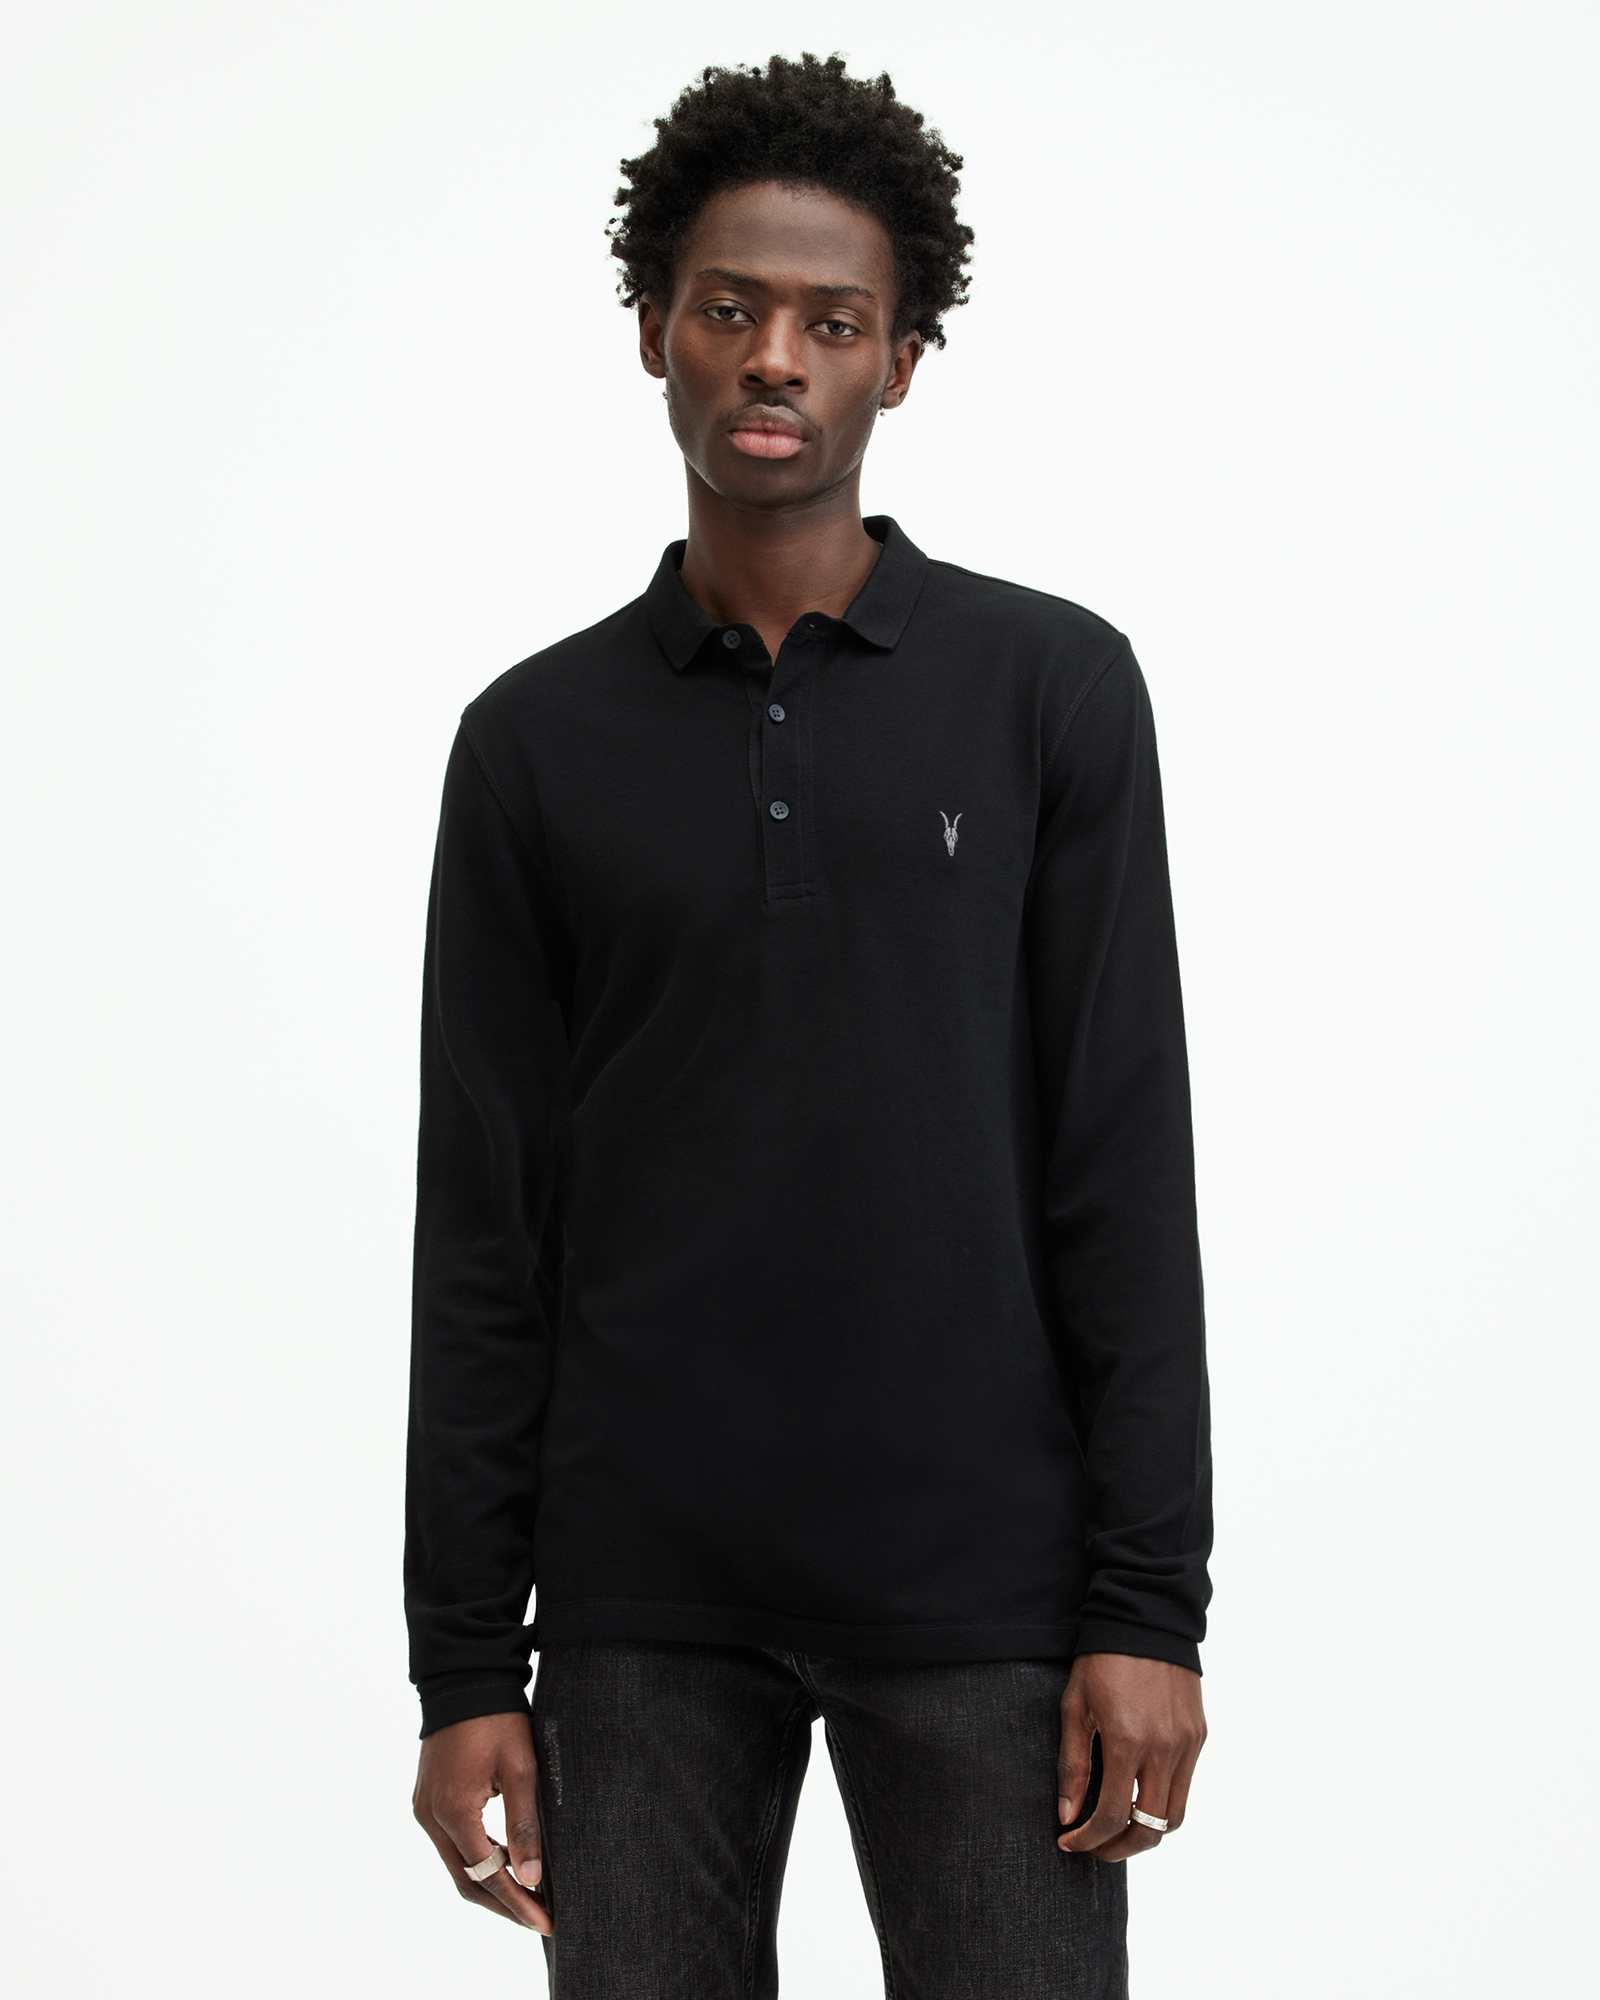 AllSaints Men's Slim Fit Reform Long Sleeve Polo Shirt, Black, Size: S